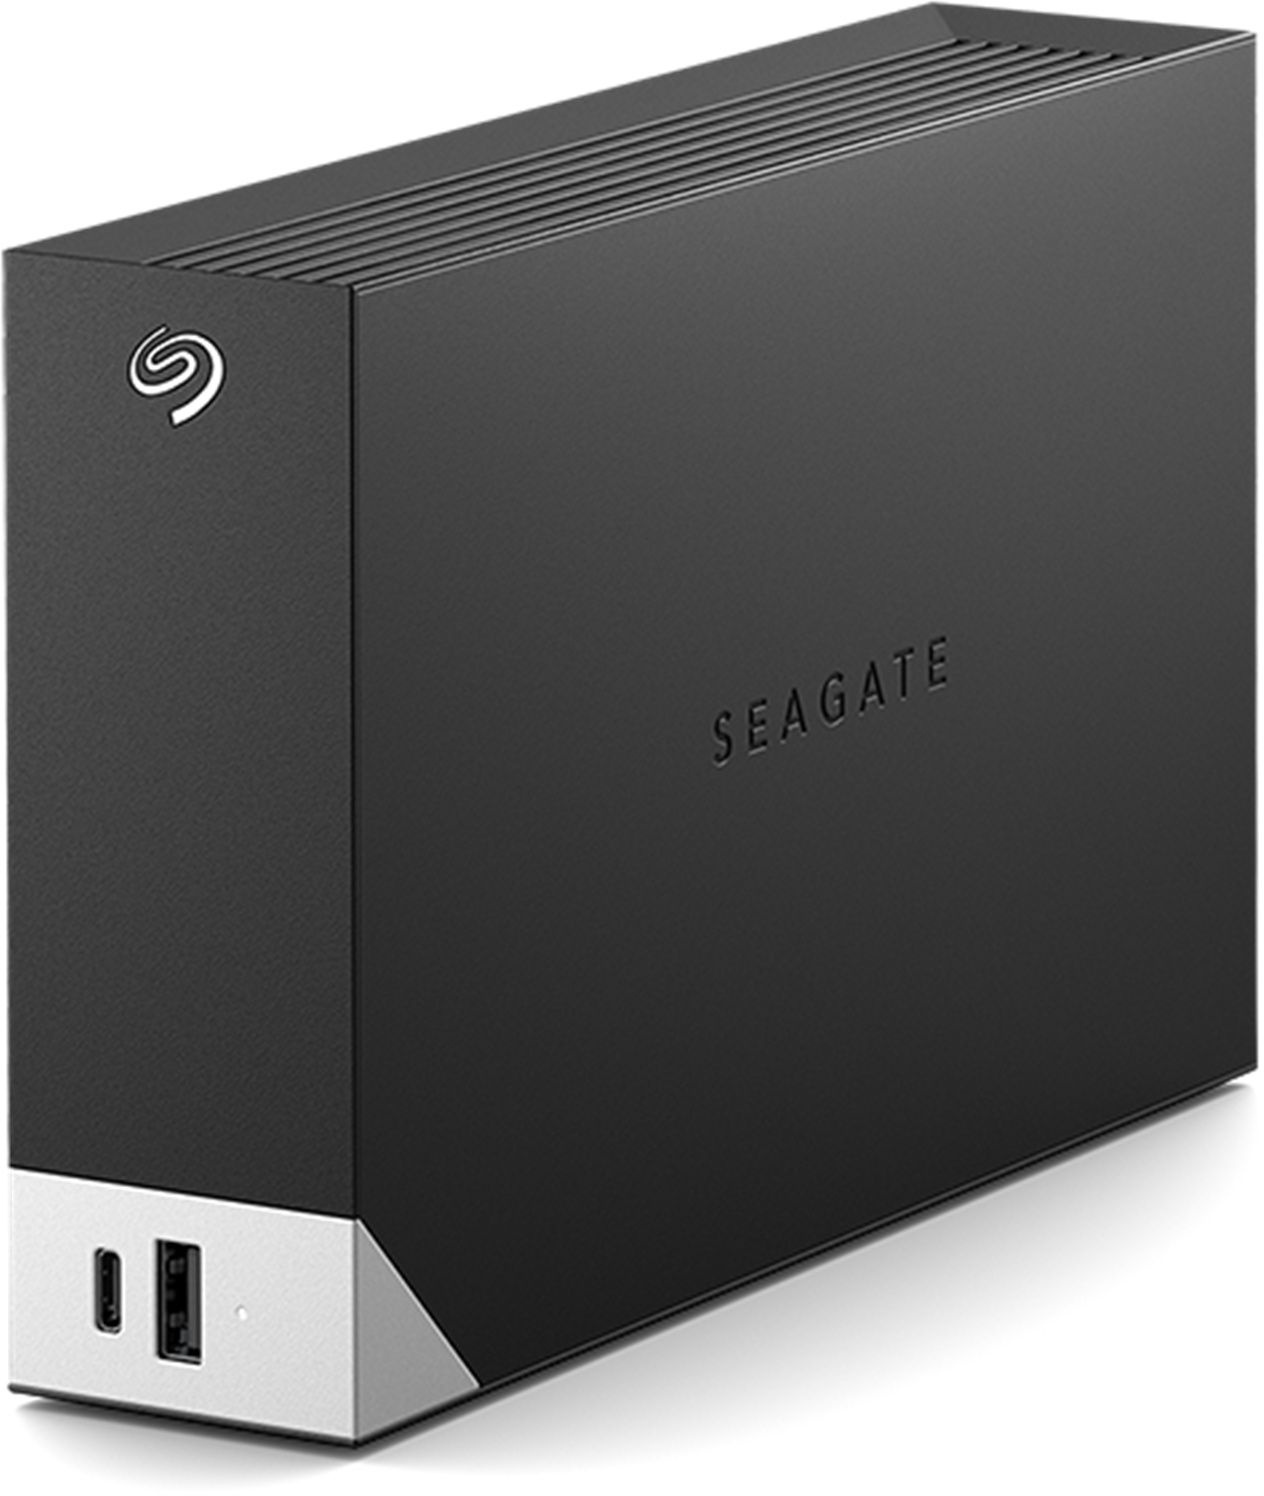 Жесткий диск Seagate USB 3.0 12.2Tb 3.5" черный (STLC12000400)